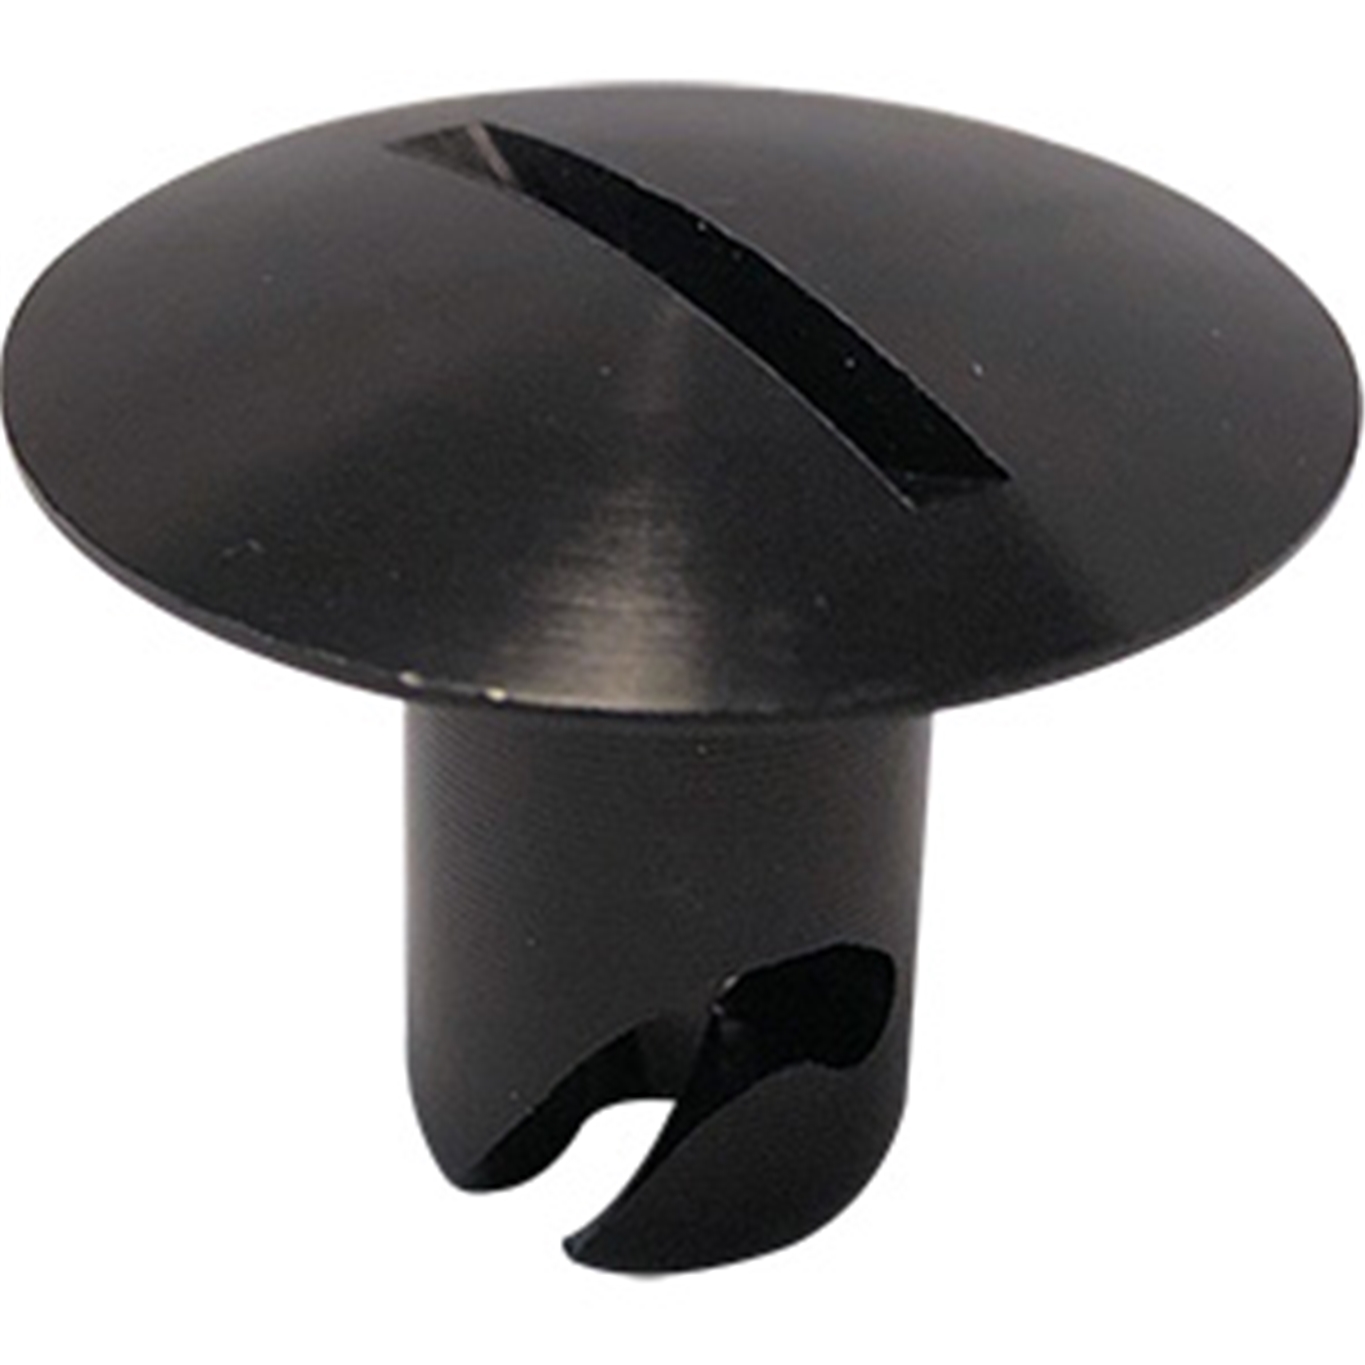 Panelfast Black Big Oval Head Aluminum 7/16".550 Grip